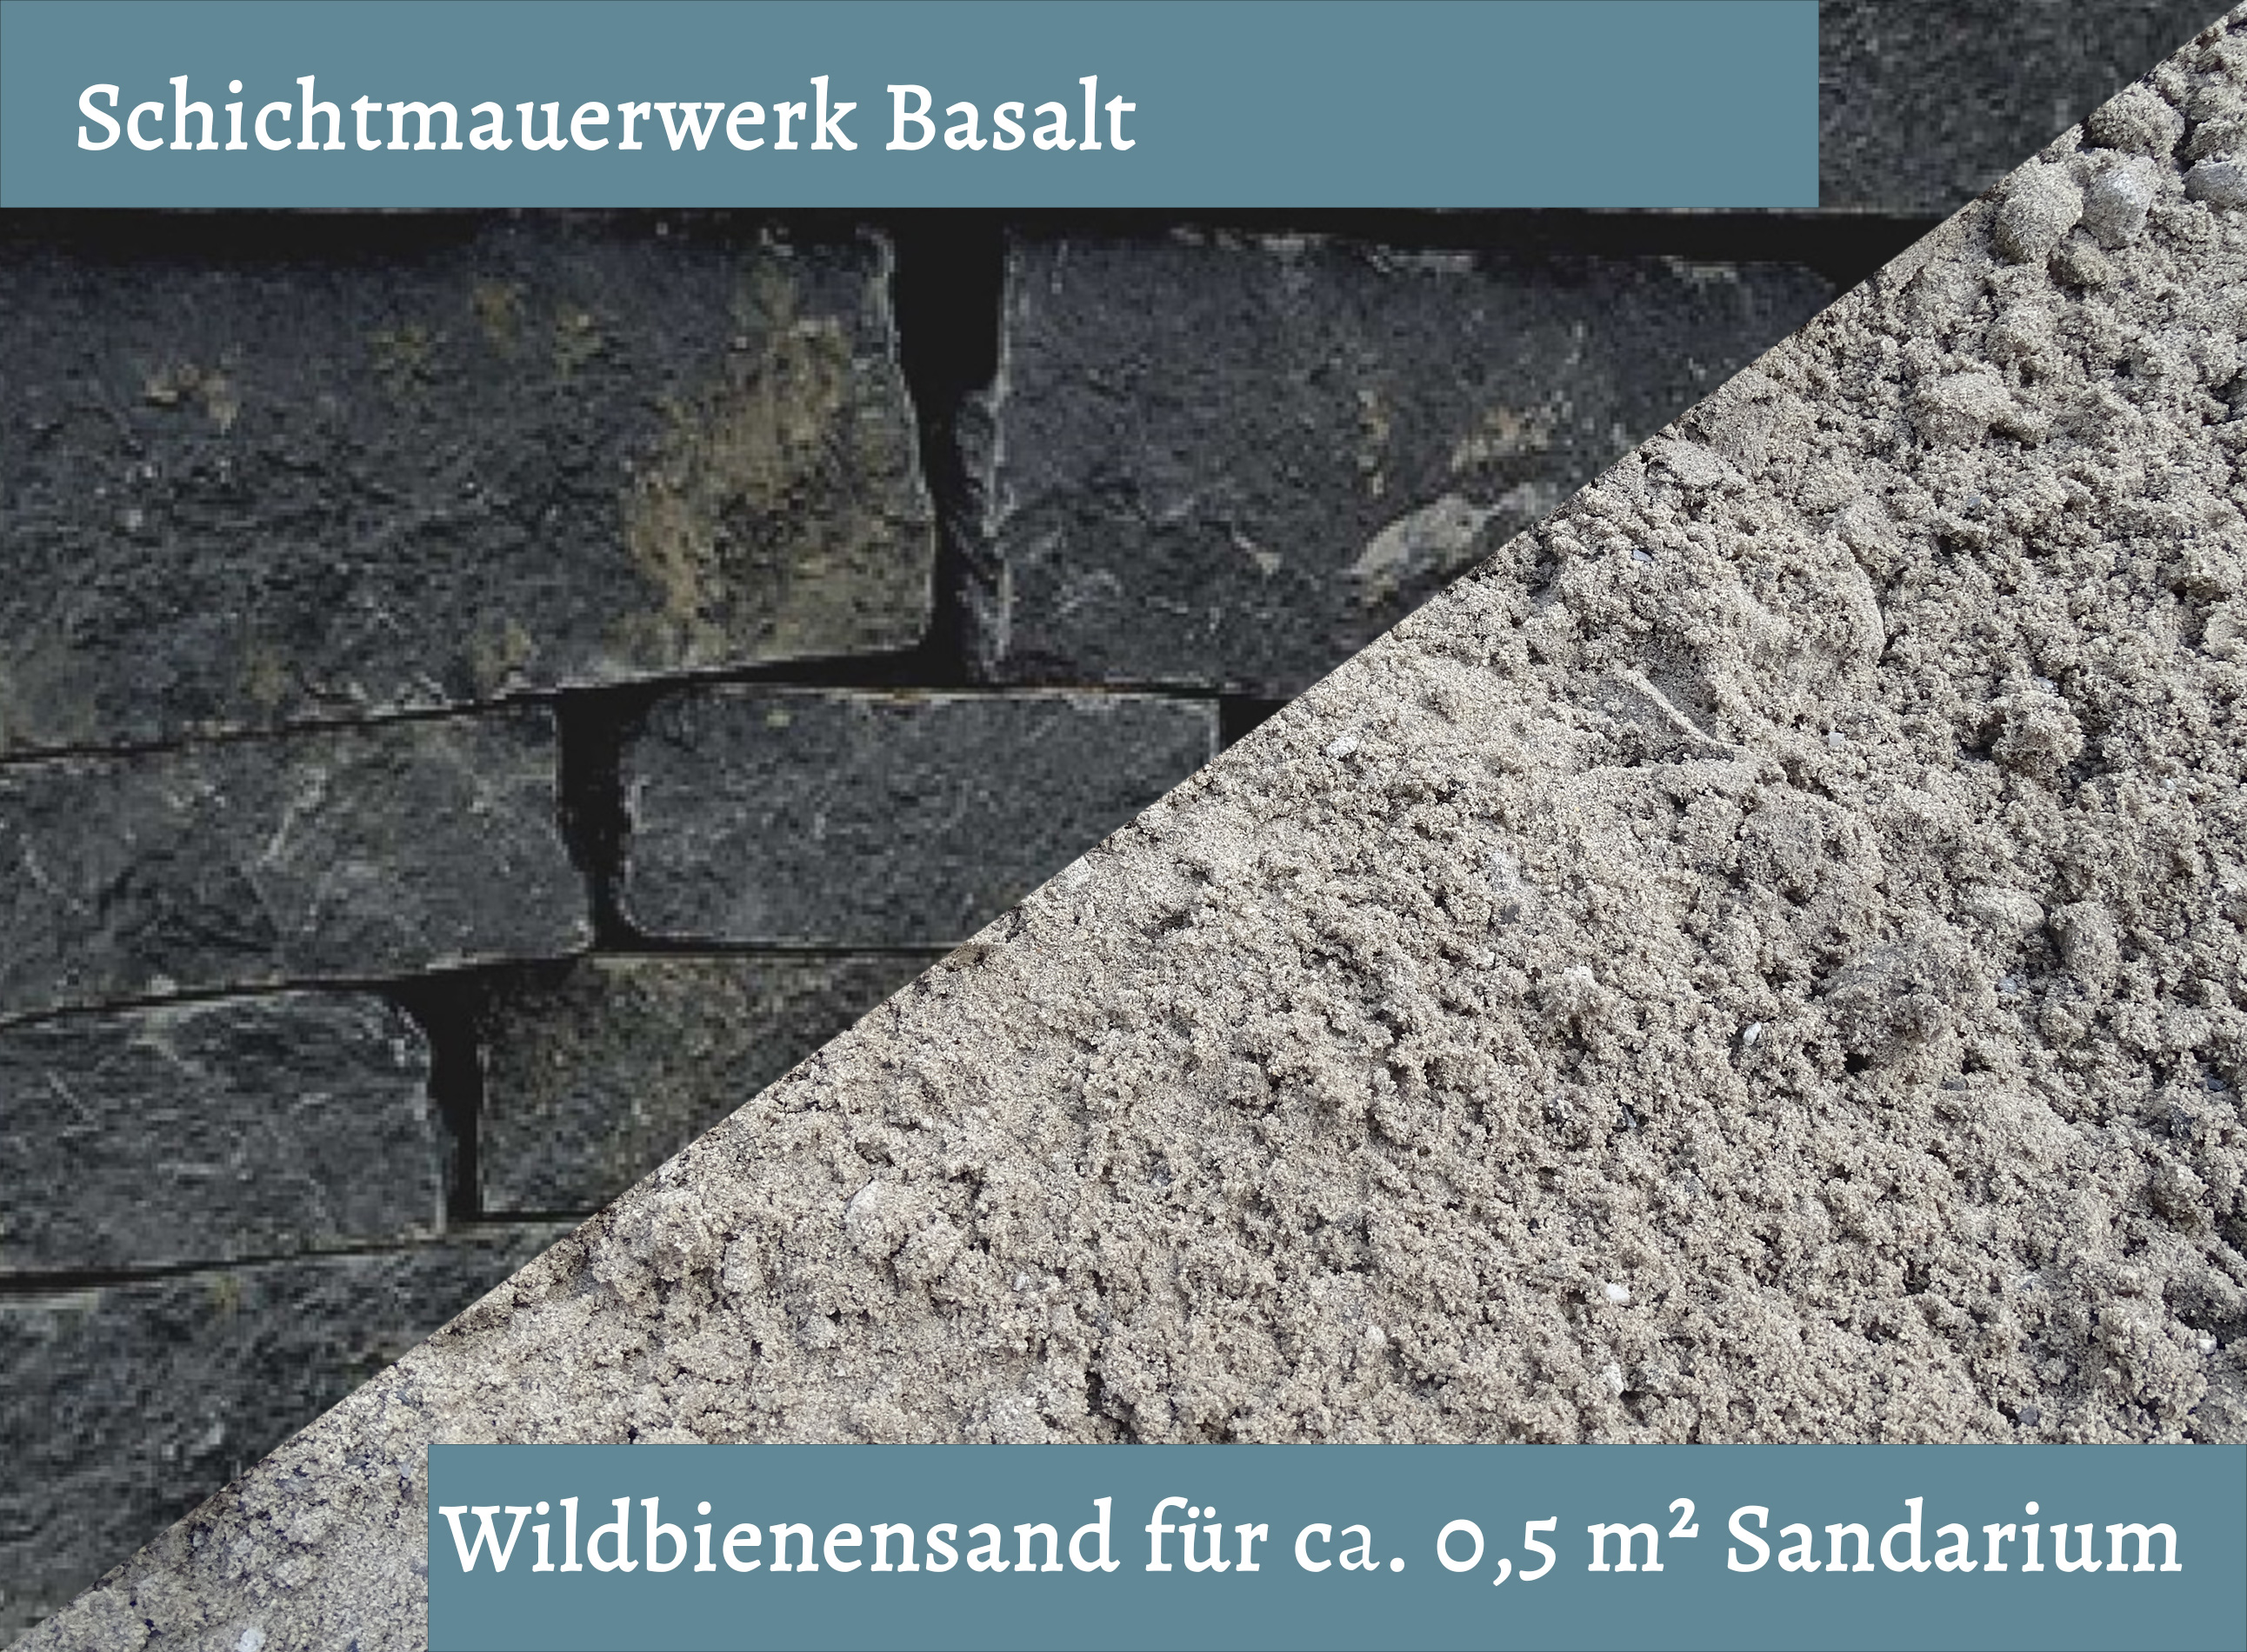 Wildbienensand mit Schichtmauer Basalt für Sandarium 0,5 m²